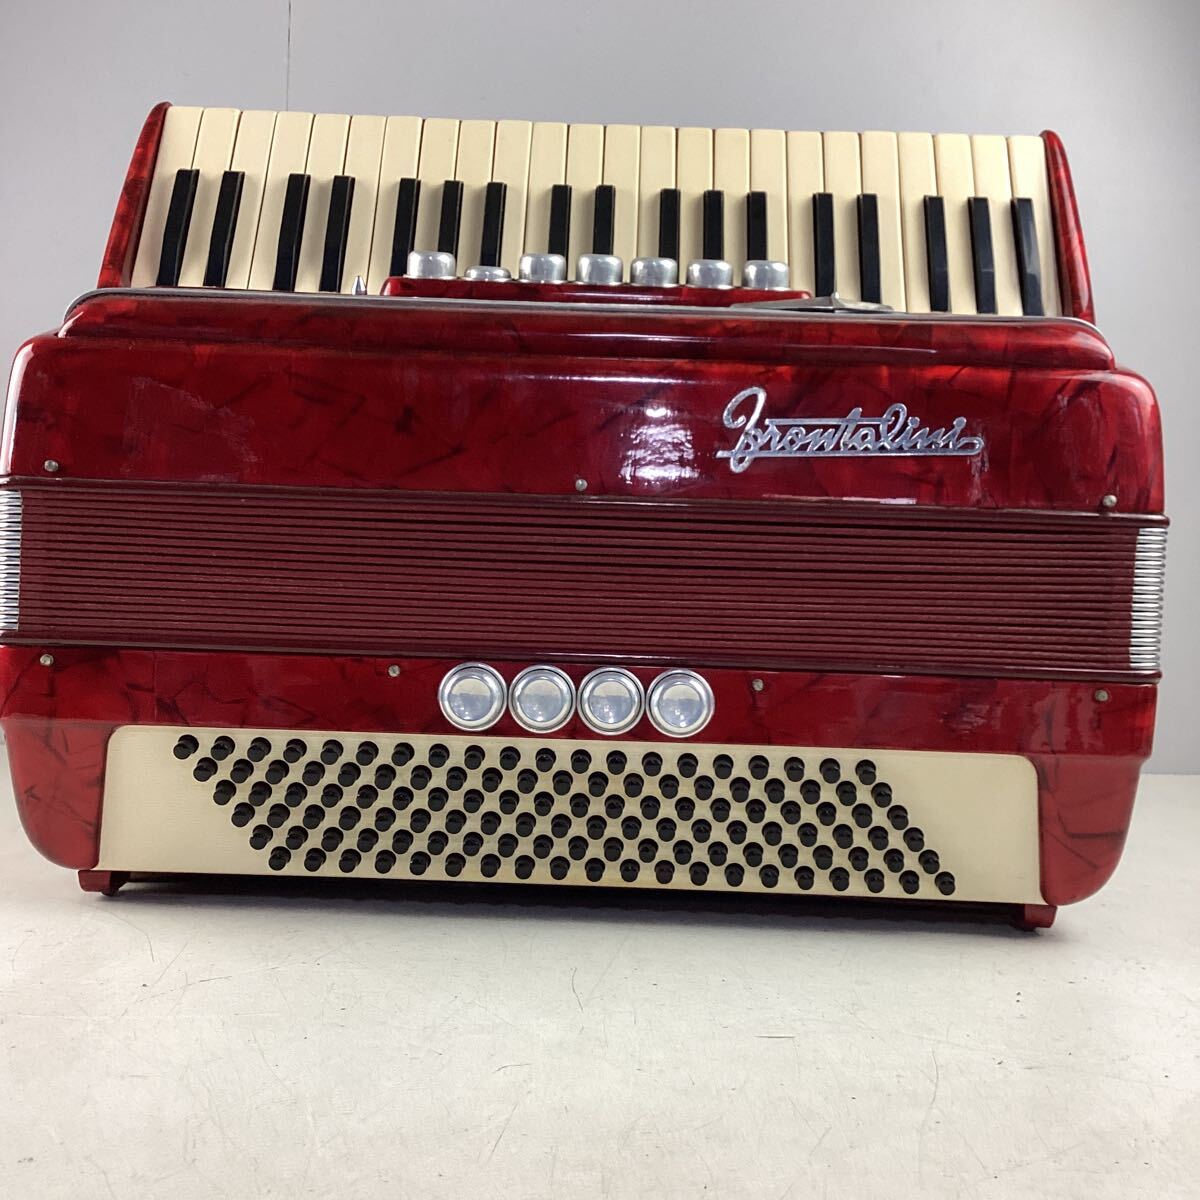 k5135 FRONTALINI аккордеон Италия производства 41 клавиатура 269/3 клавишные инструменты красный кейс жесткий чехол музыкальные инструменты музыка Event звук смог сделать б/у 